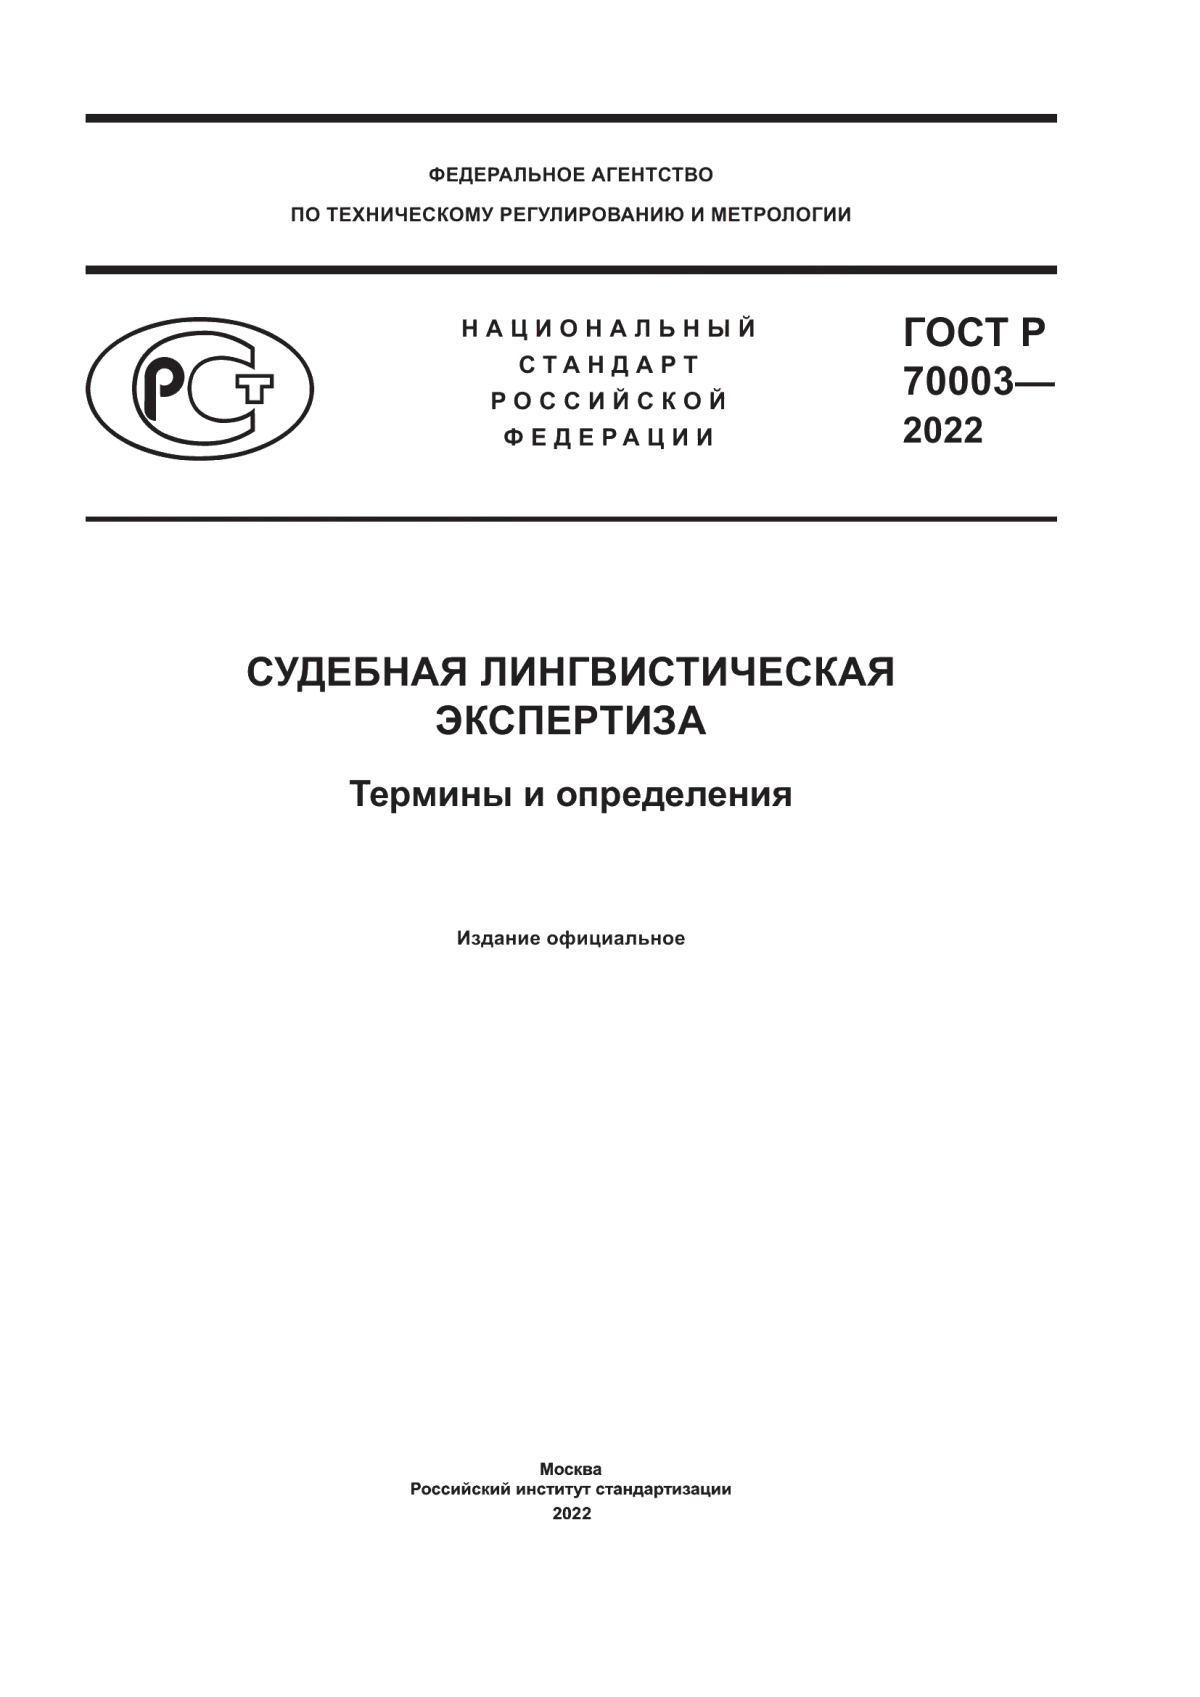 ГОСТ Р 70003-2022 Судебная лингвистическая экспертиза. Термины и определения